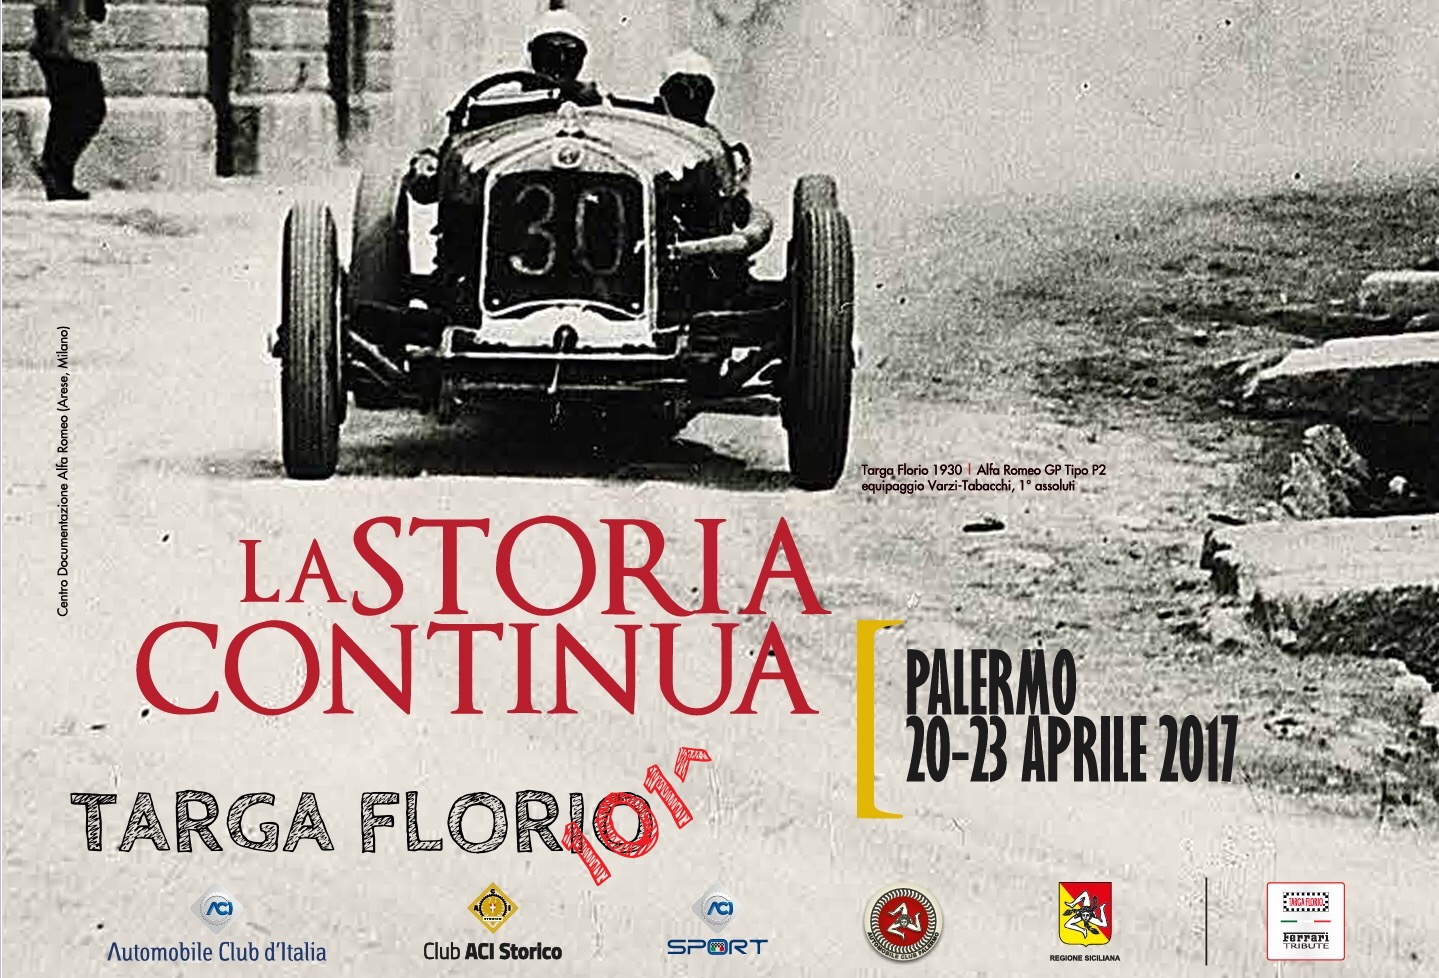 Targa Florio Rally